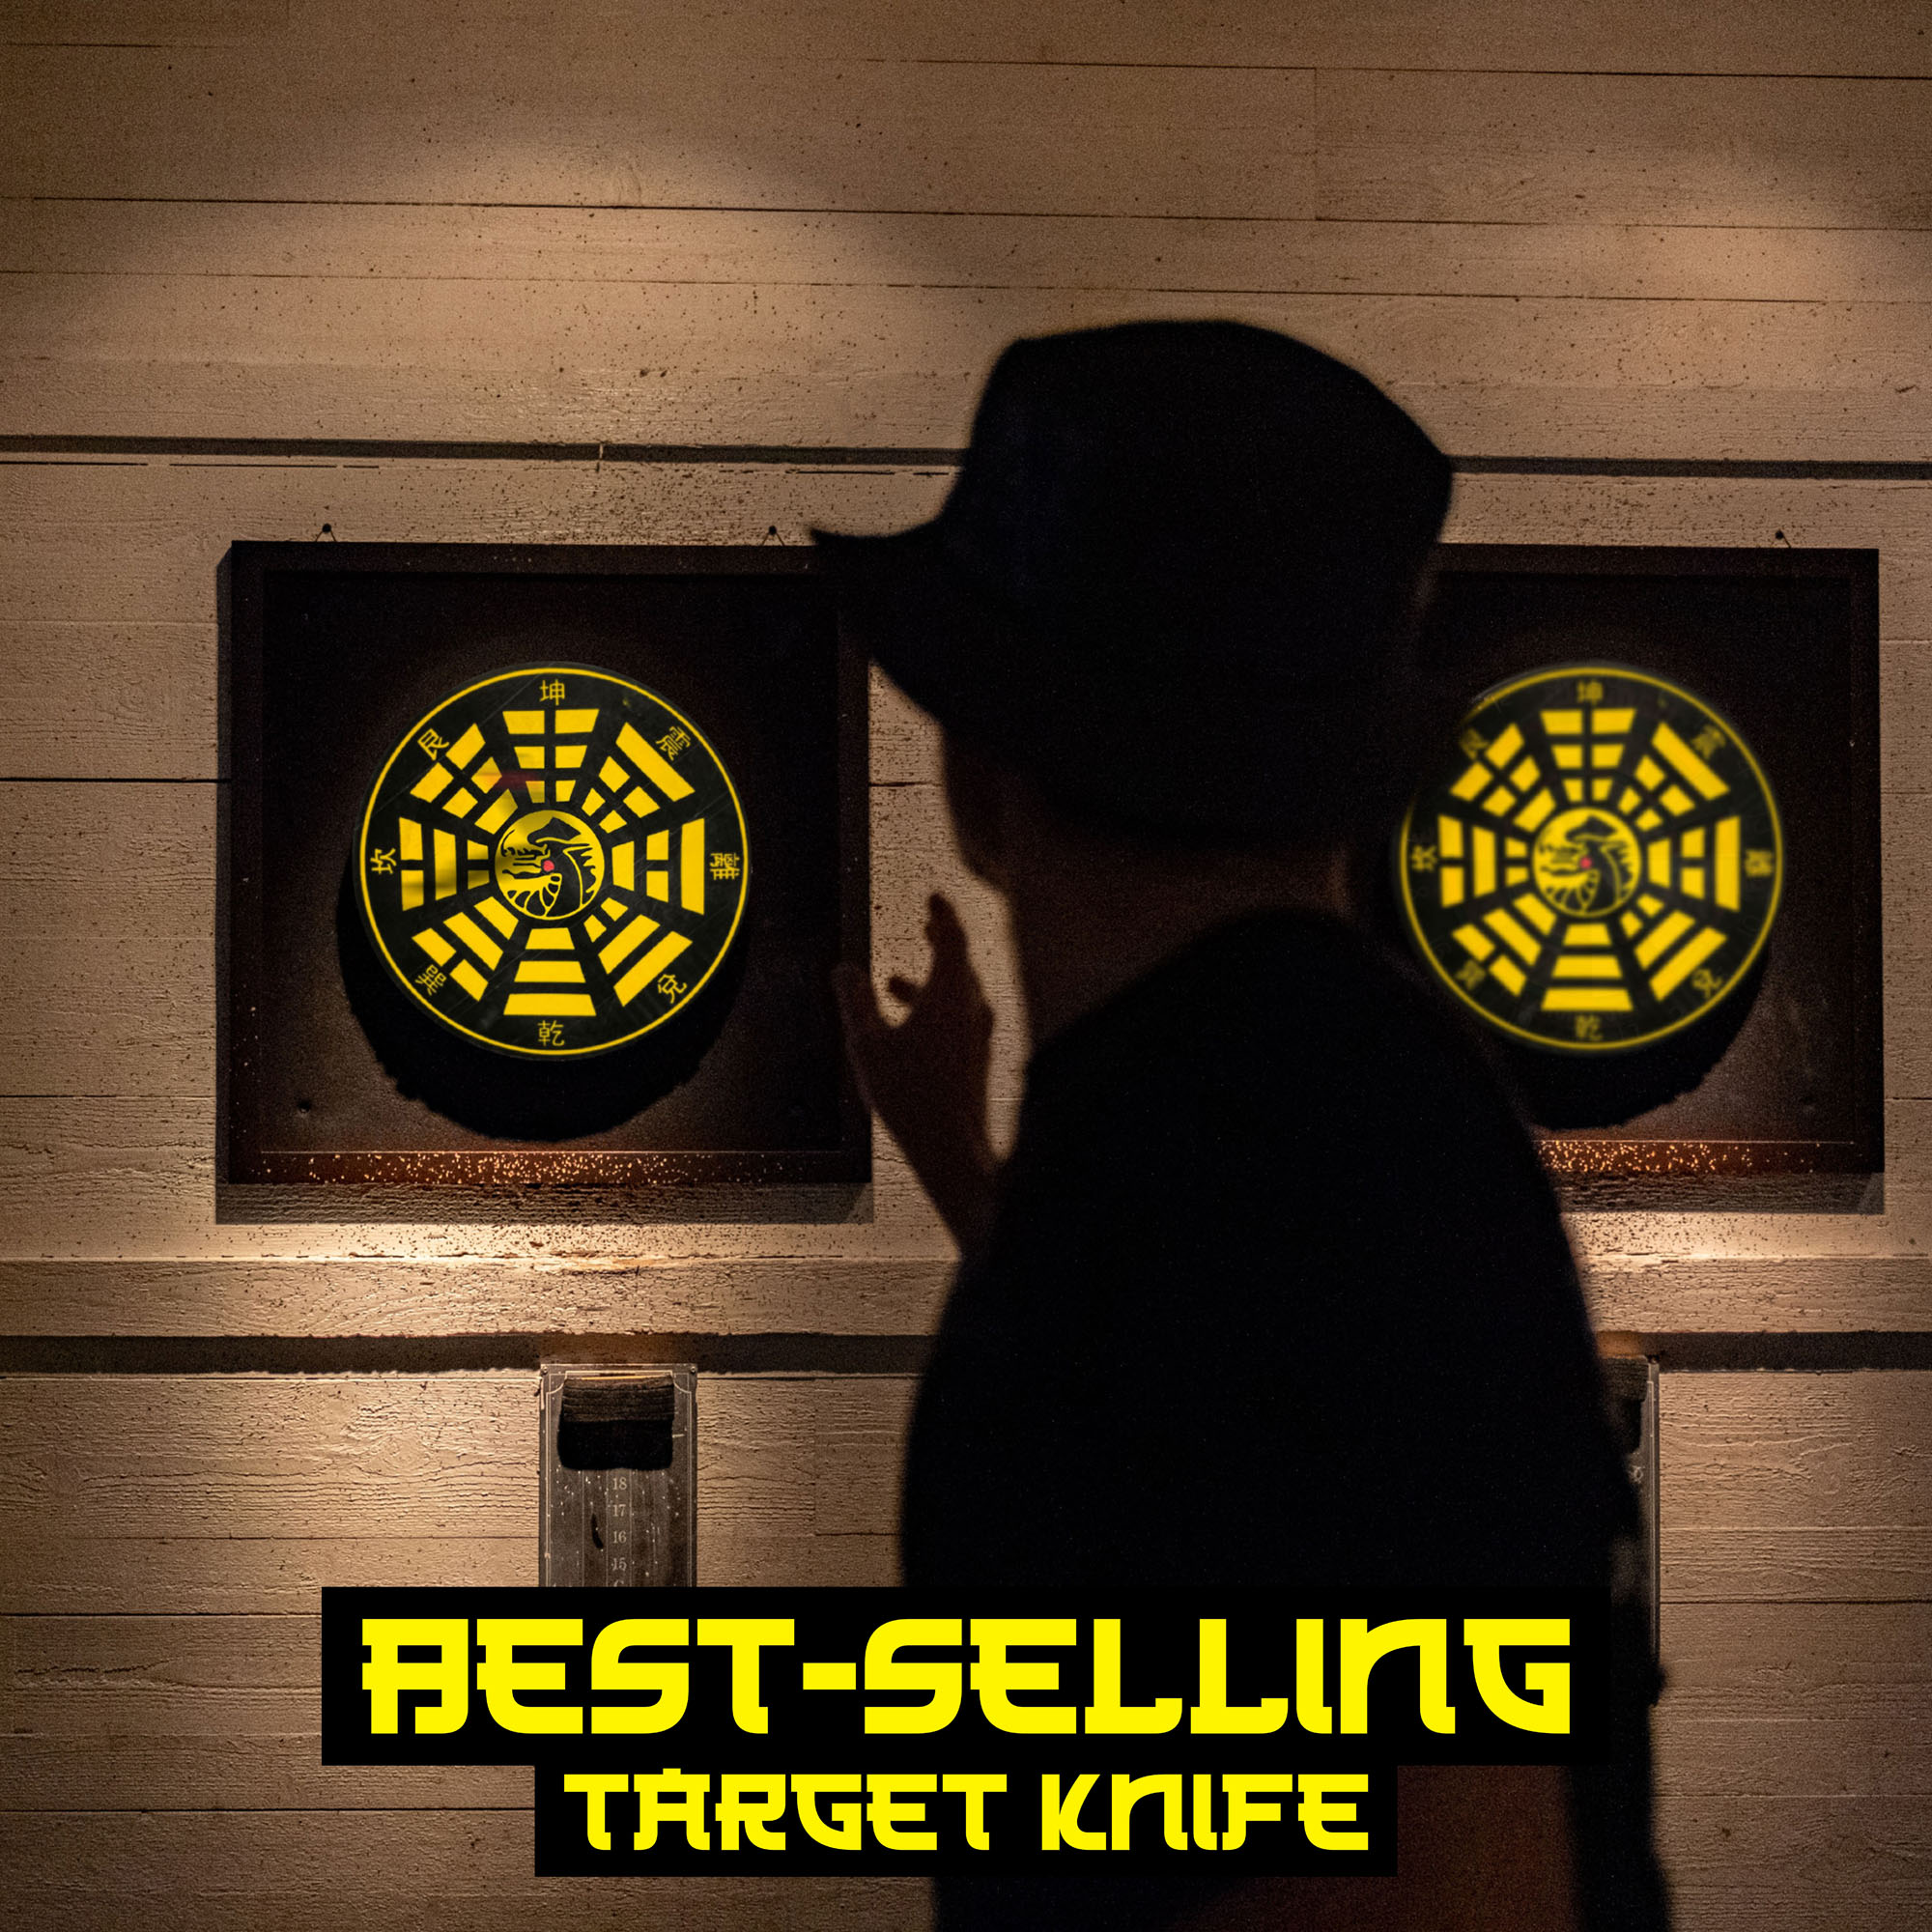 Throwing Knife Target